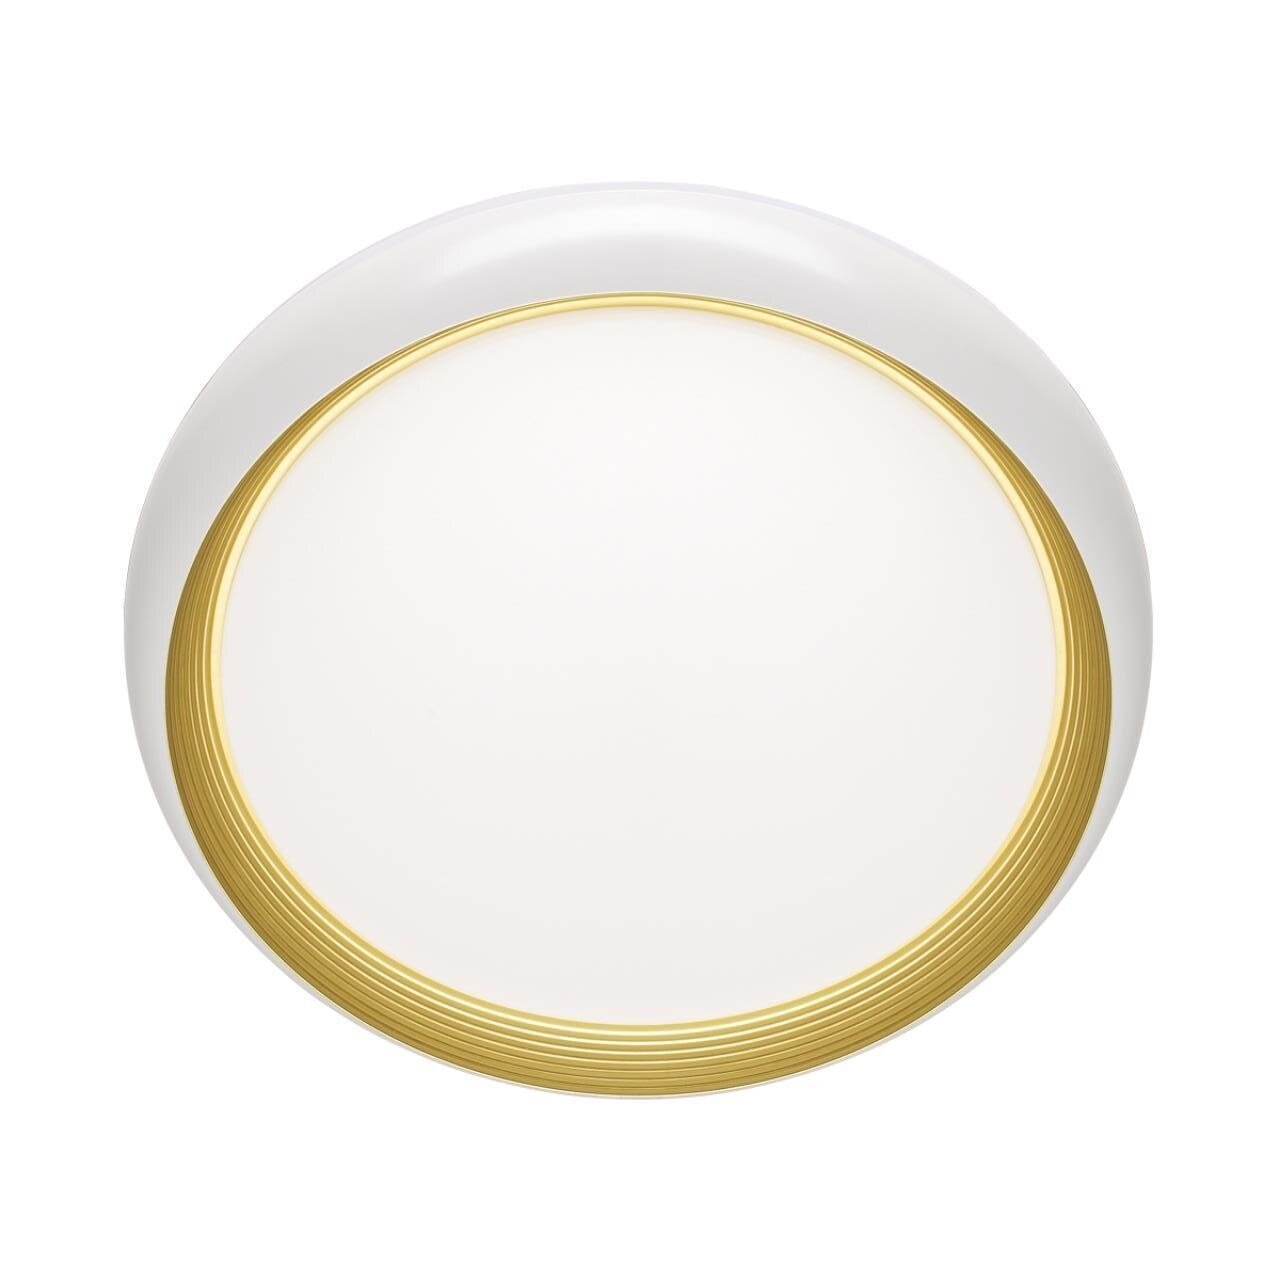 Настенно-потолочный светодиодный светильник Sonex Pale Tofiq White 7650/DL